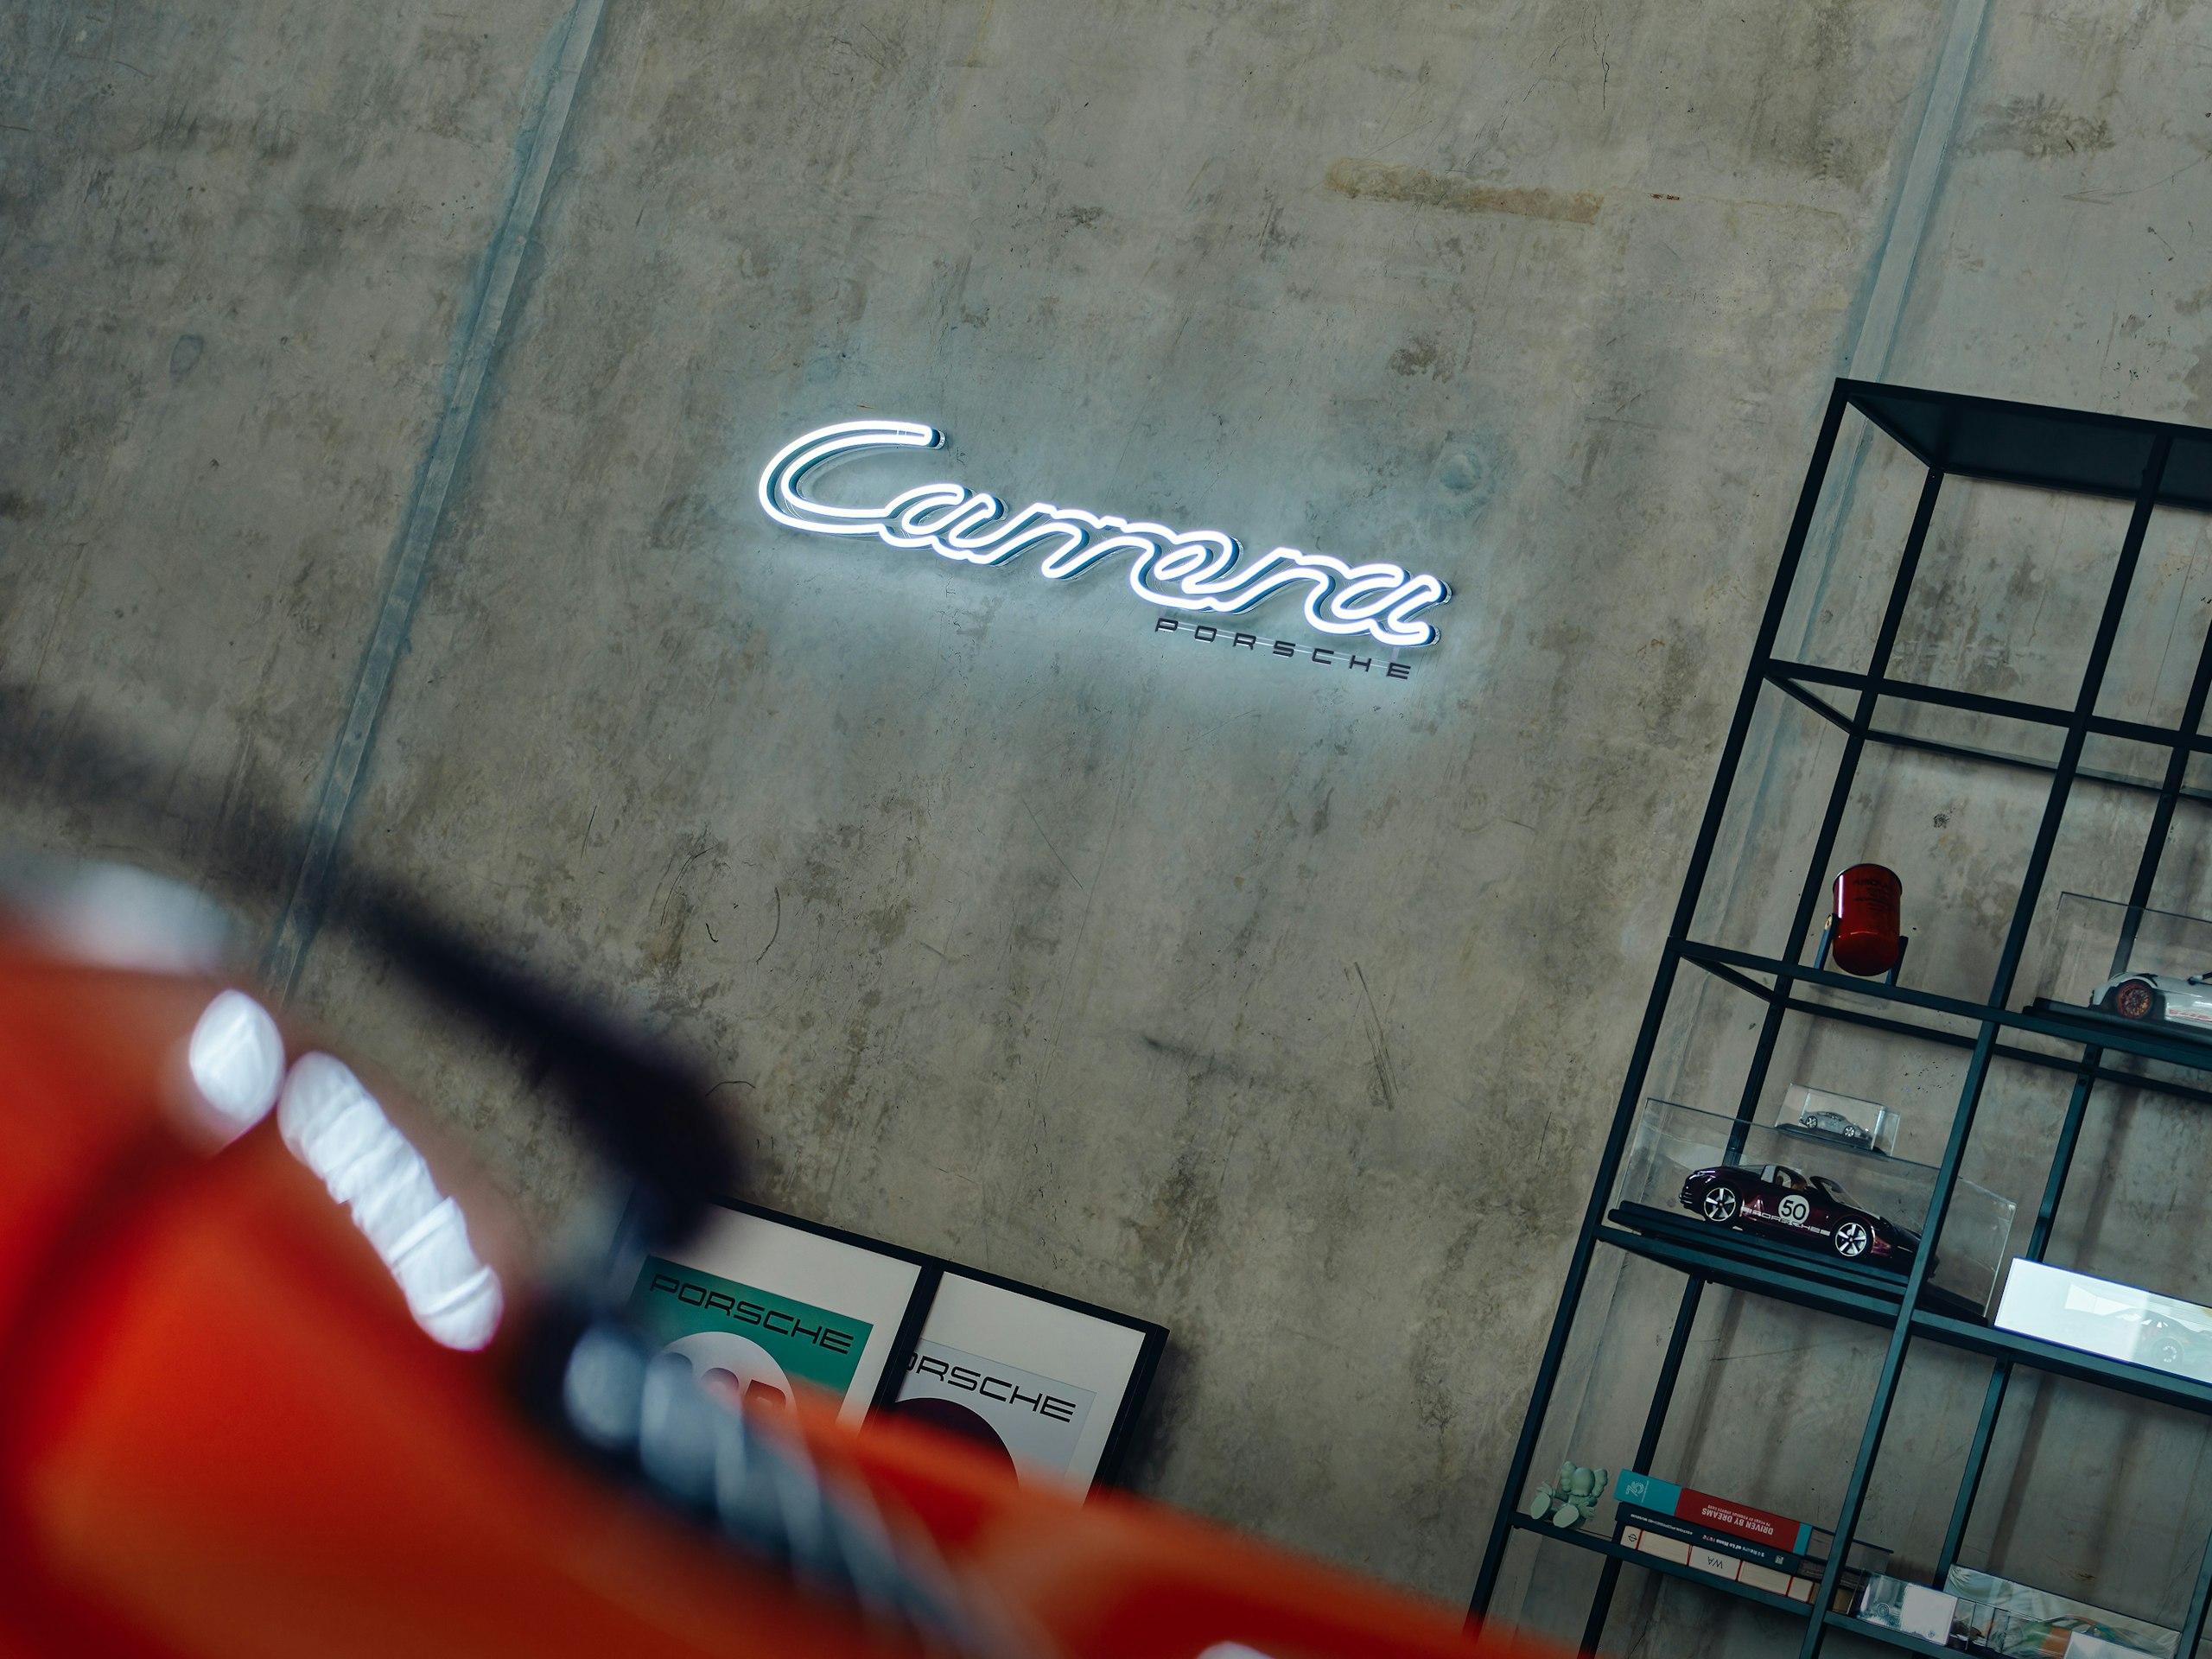 Neon sign on a concrete wall reading Carrera Porsche